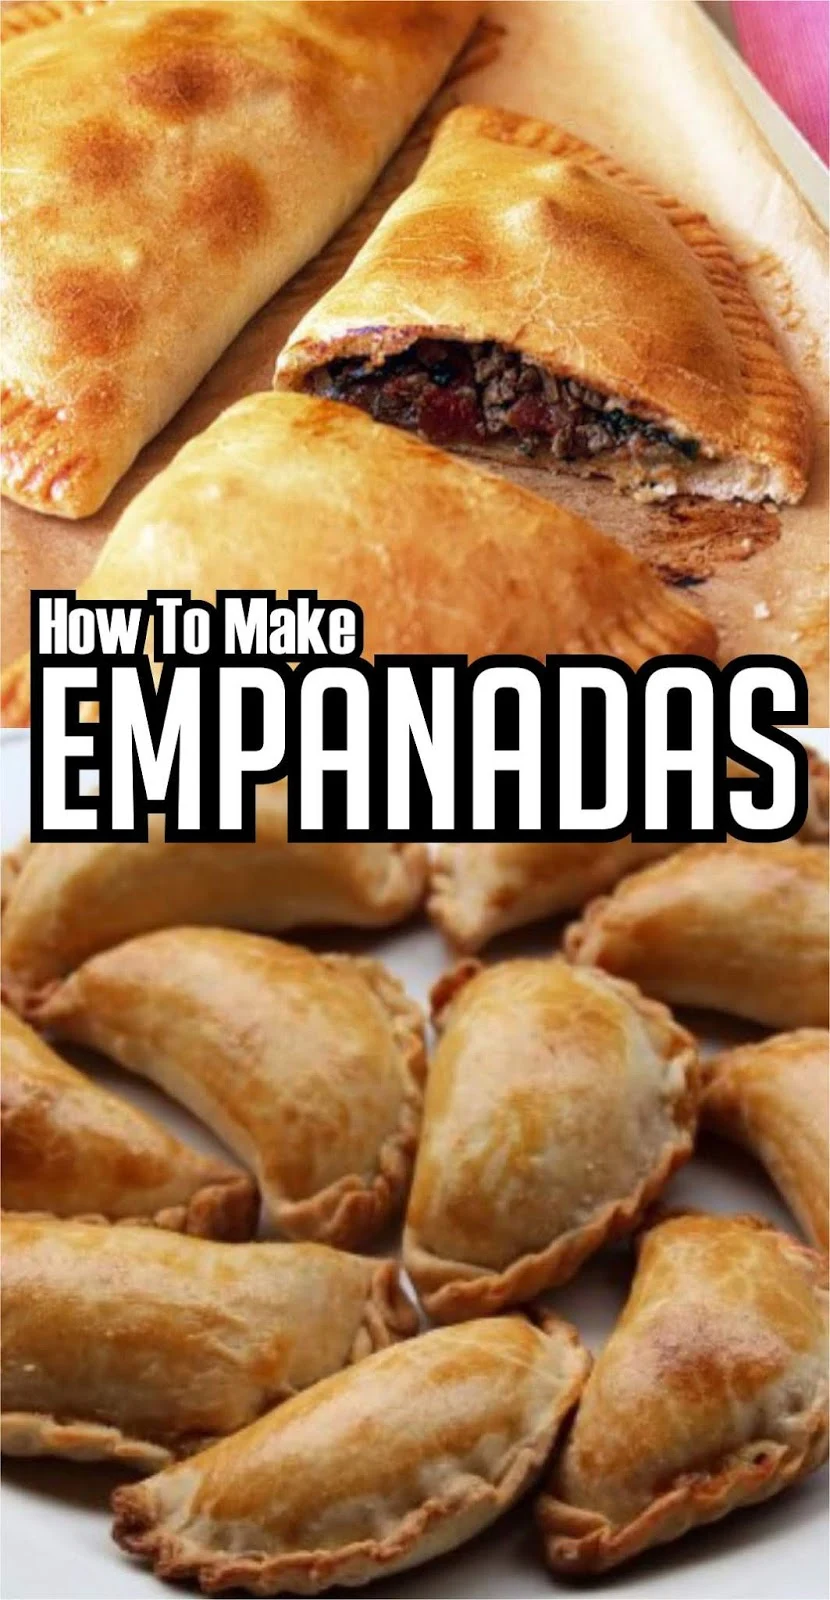 HOW TO MAKE EMPANADAS